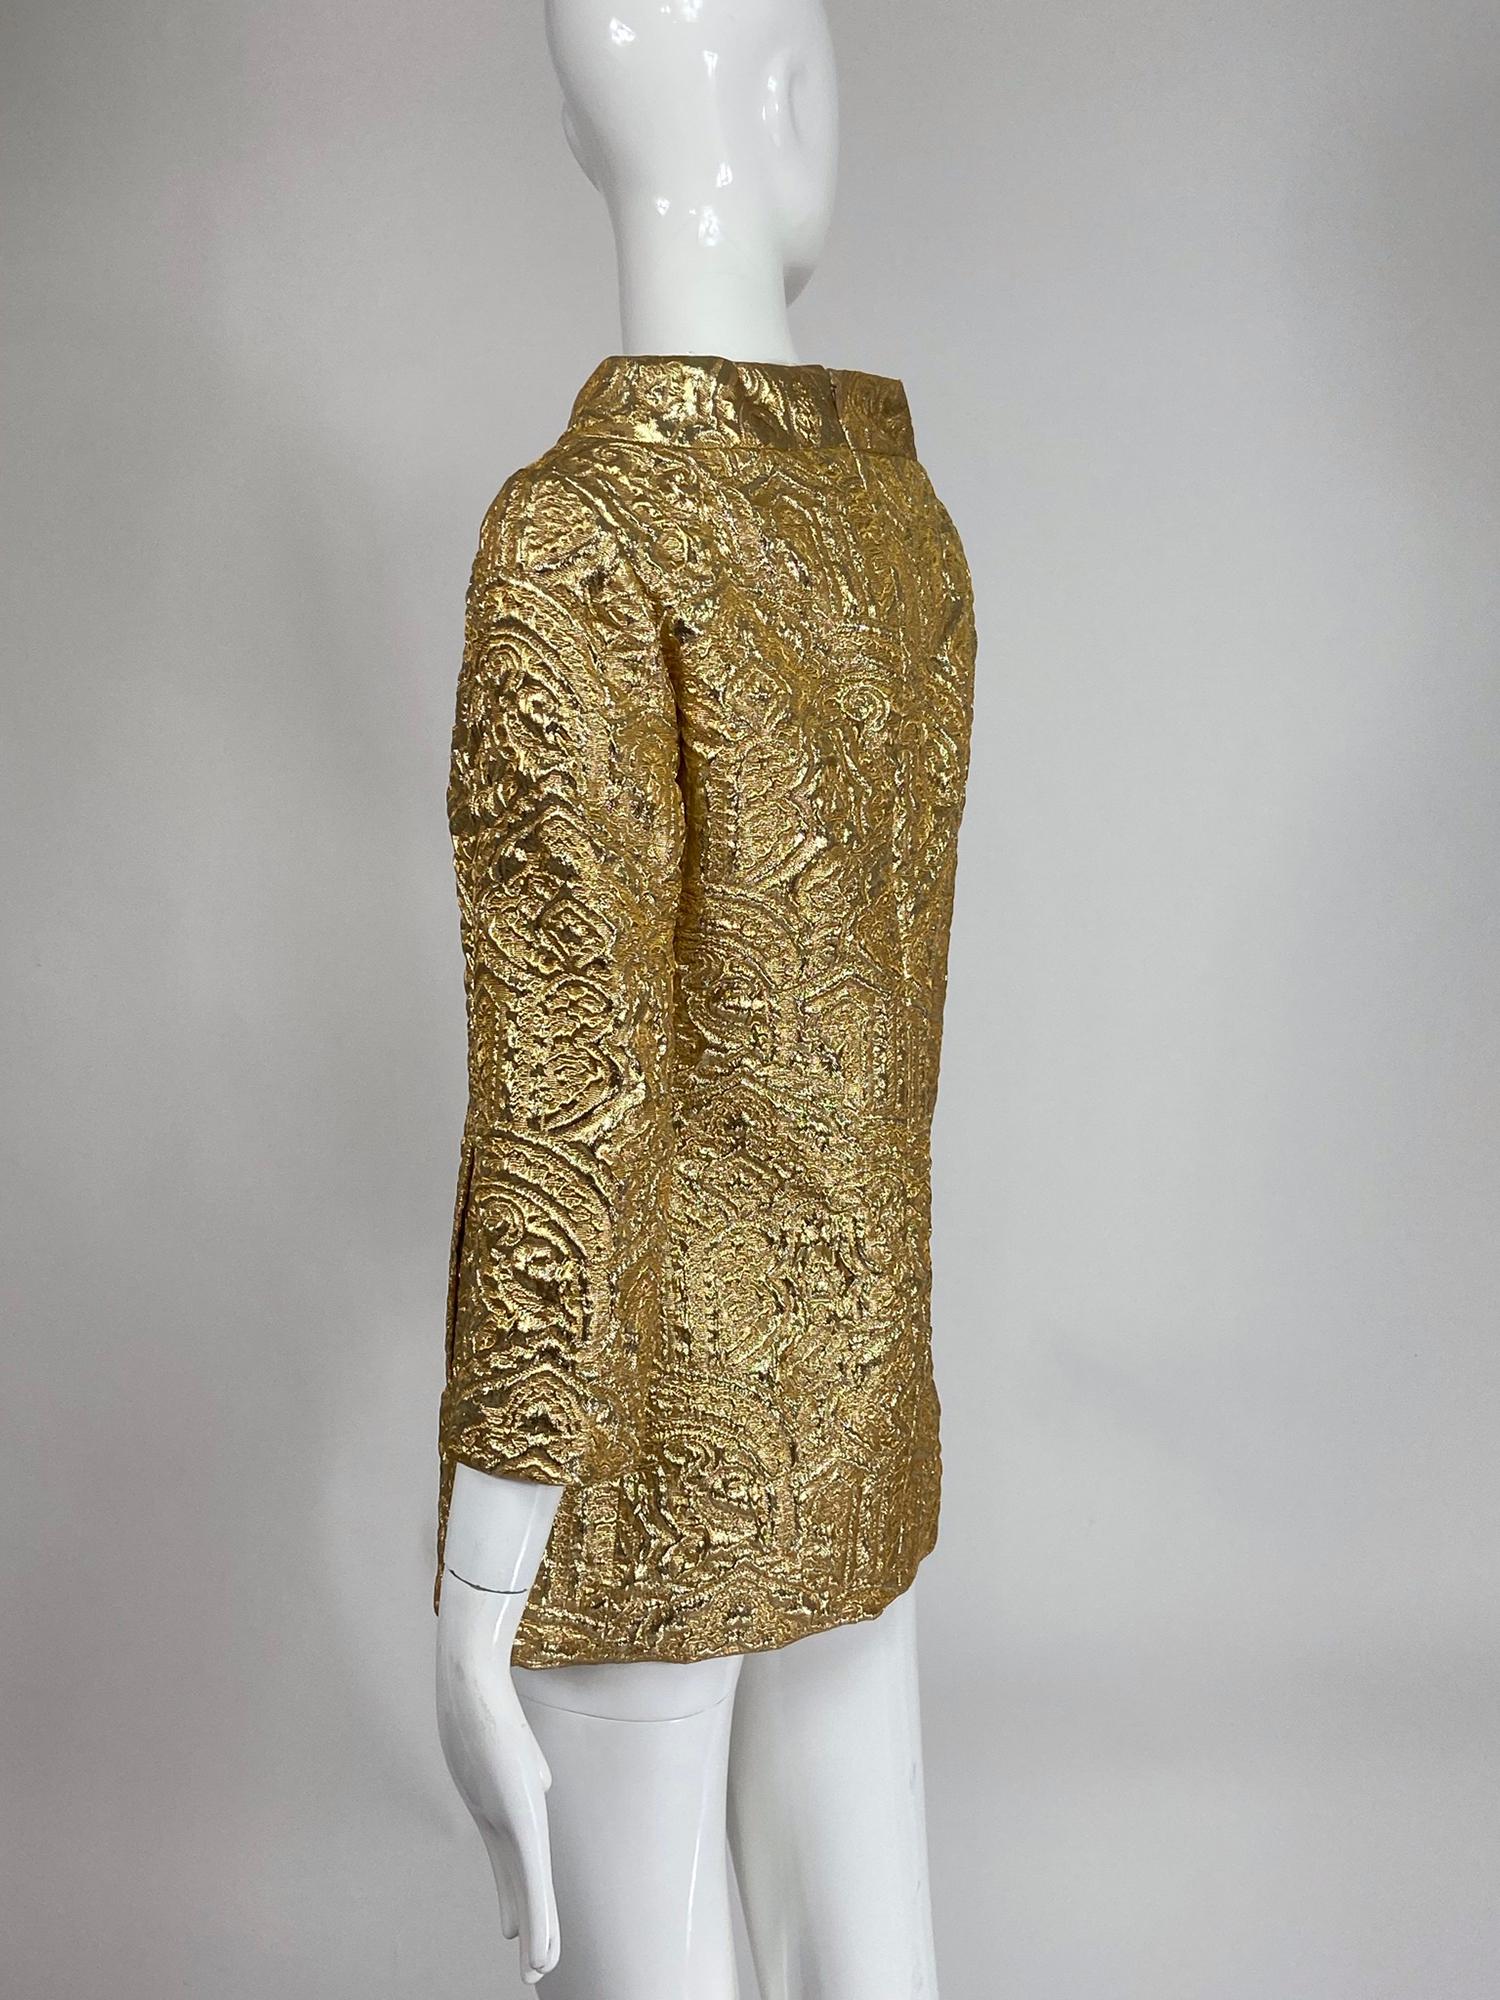 metallic gold tunic